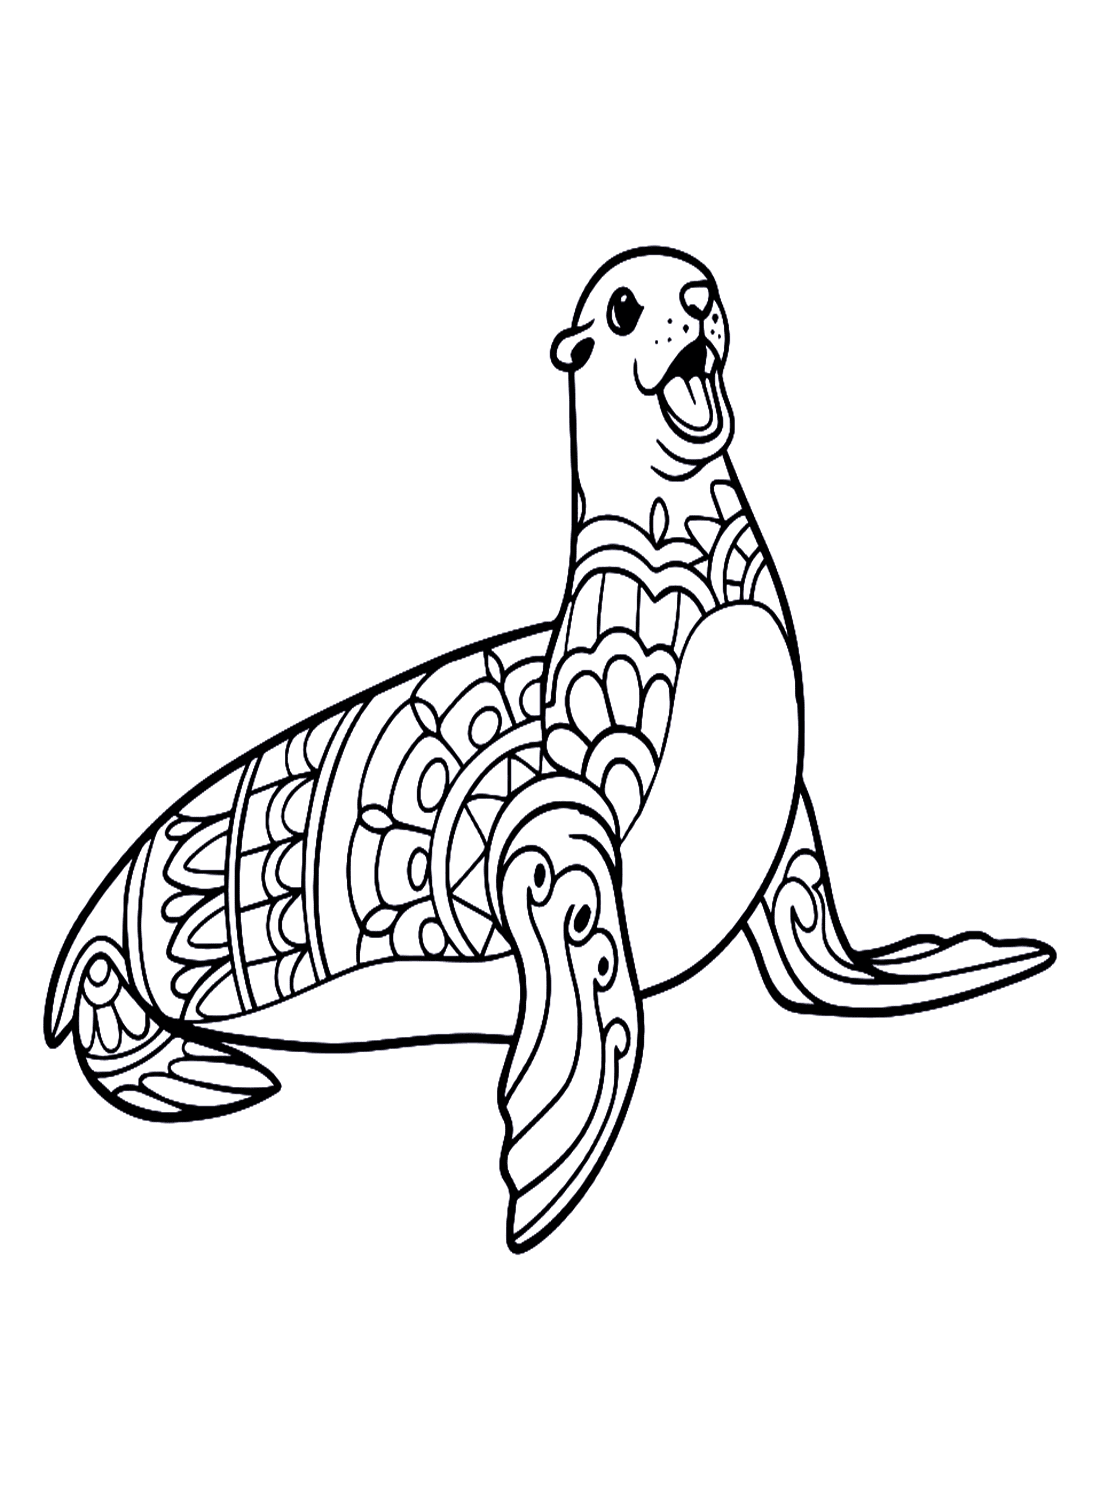 海狮卡通曼荼罗中的可爱海狮